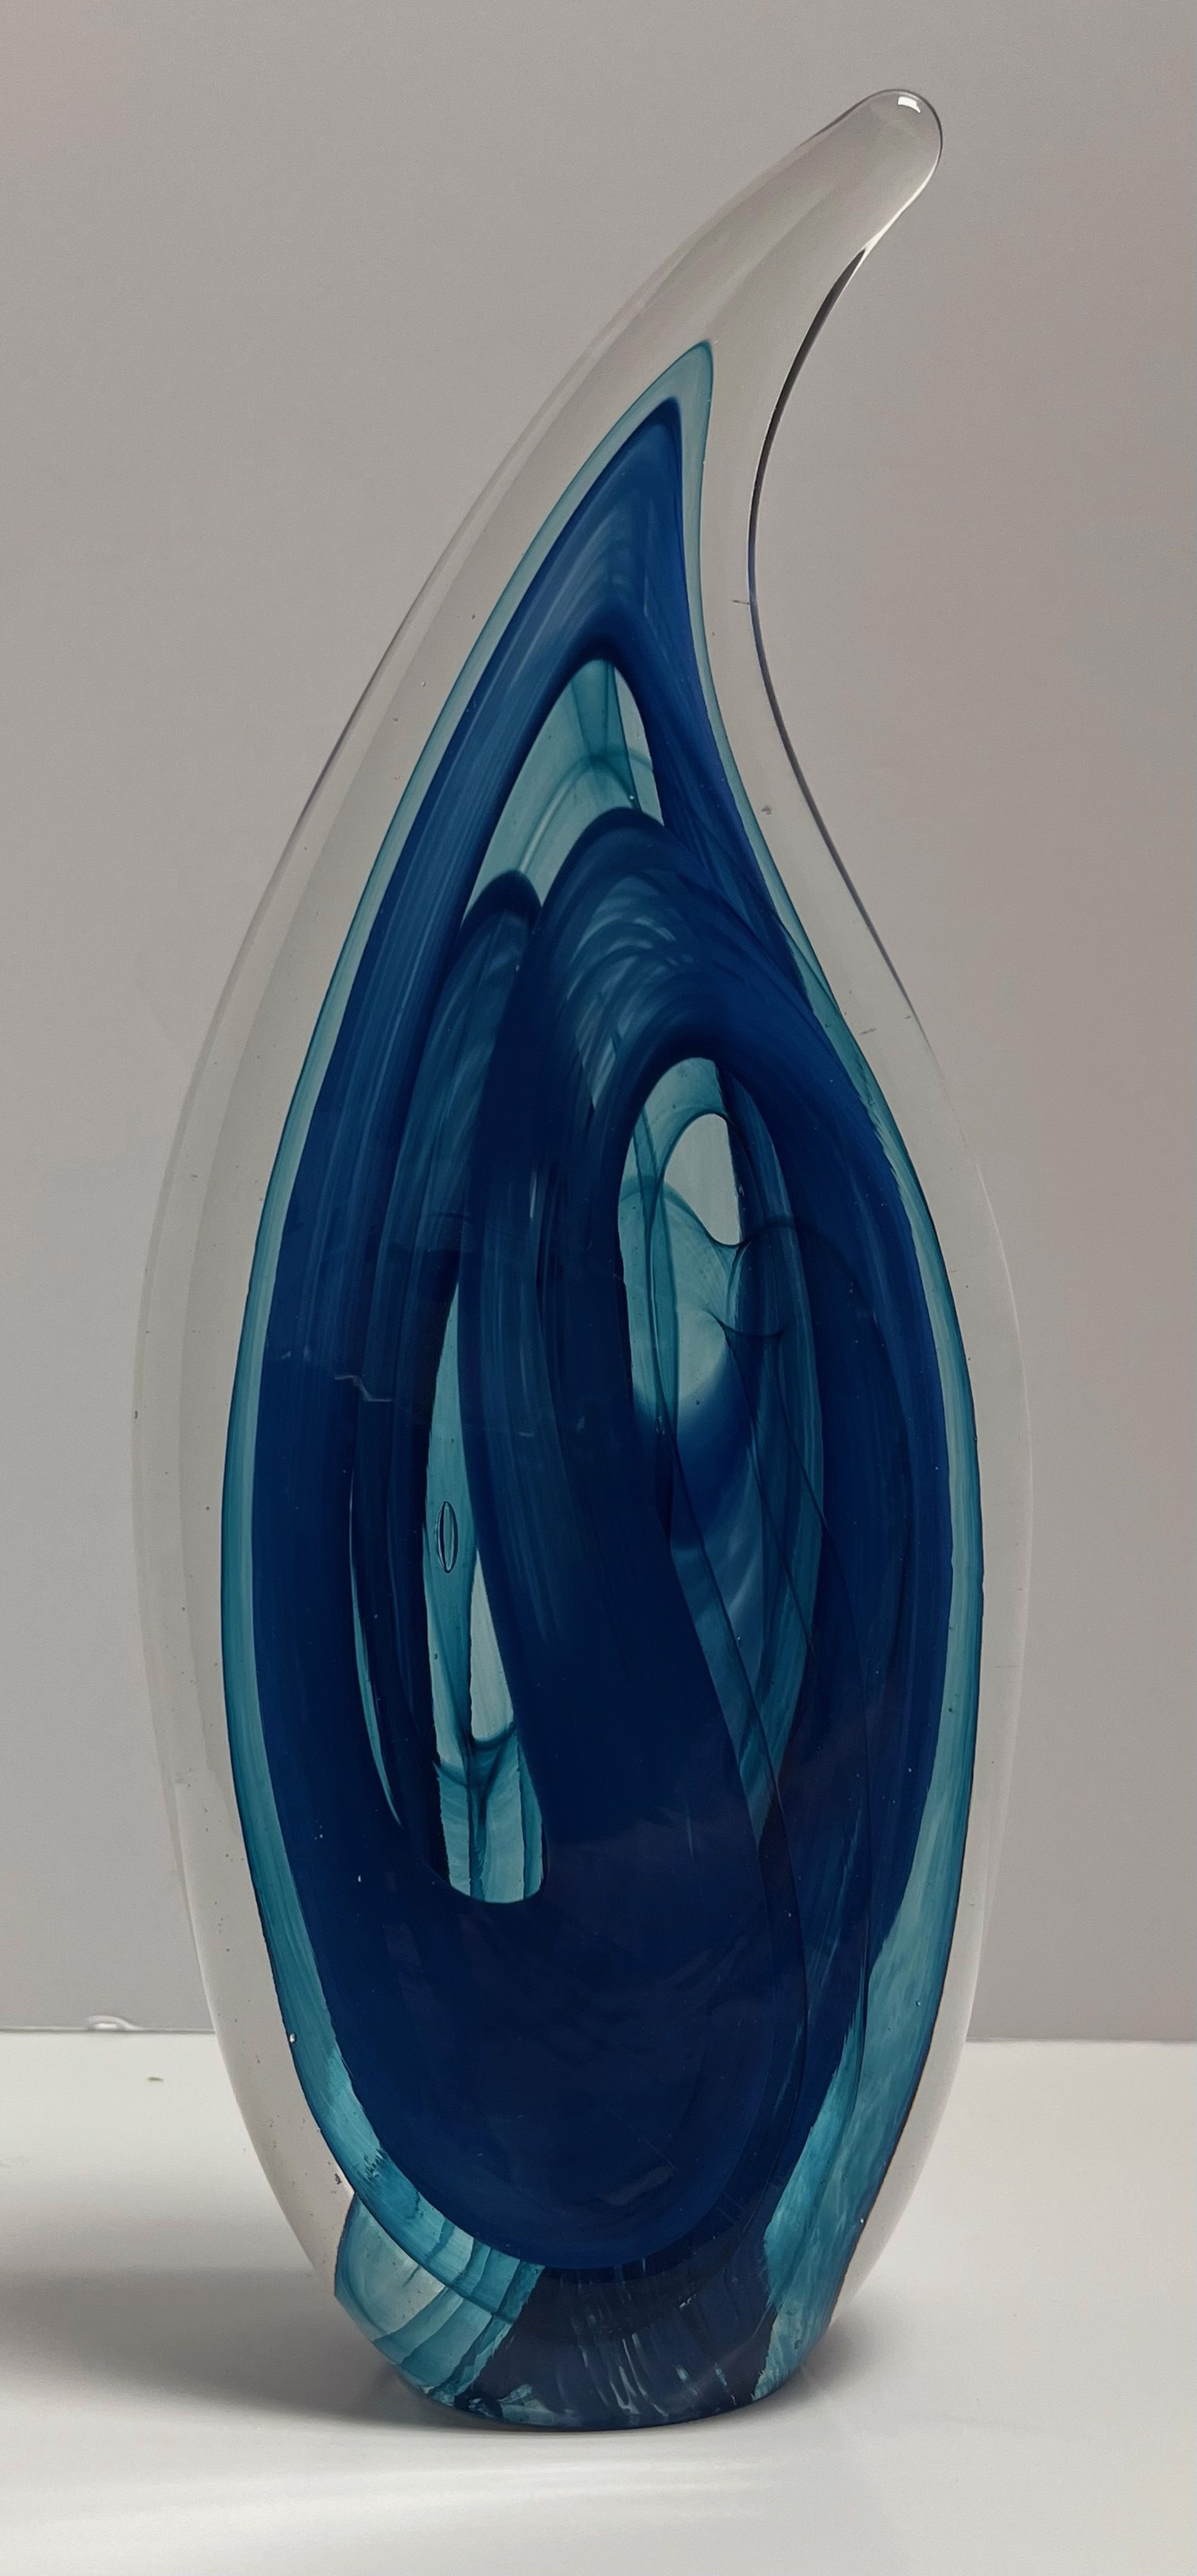 Veiled Opaque sculpture by Neil Duman